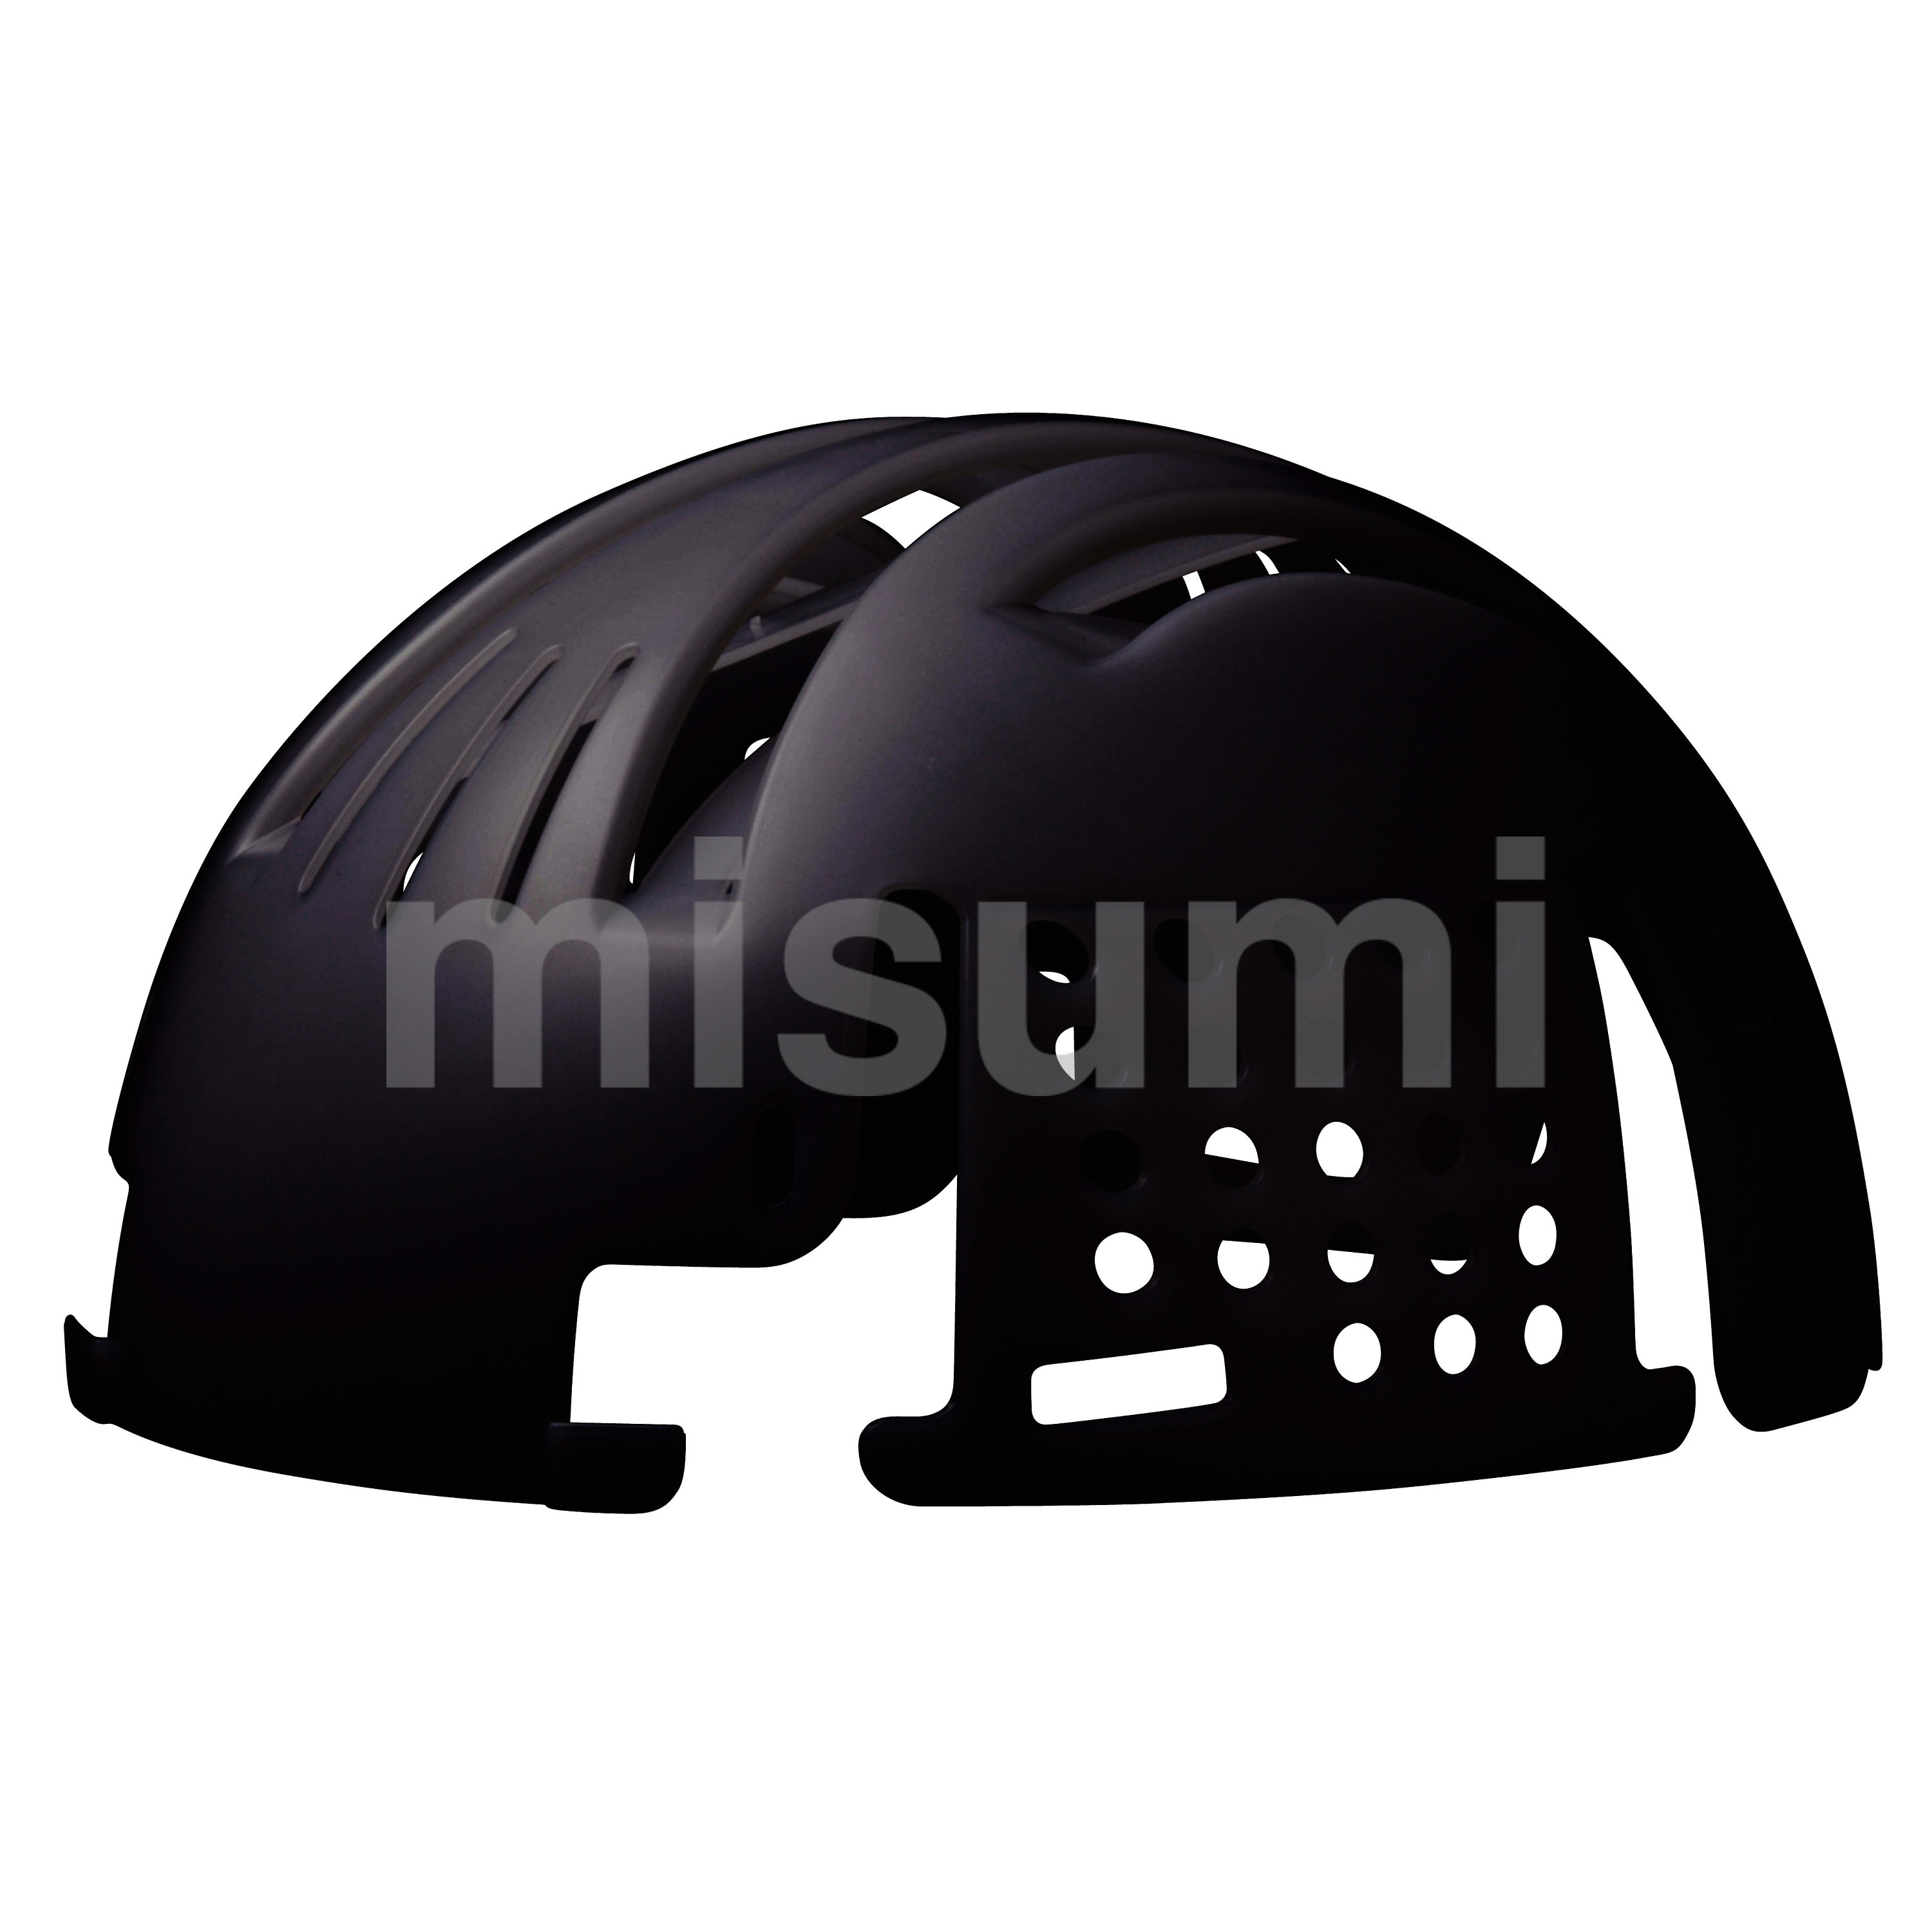 頭部保護用品 インナーキャップ INC-100 ブラック エコタイプ ミドリ安全 MISUMI(ミスミ)